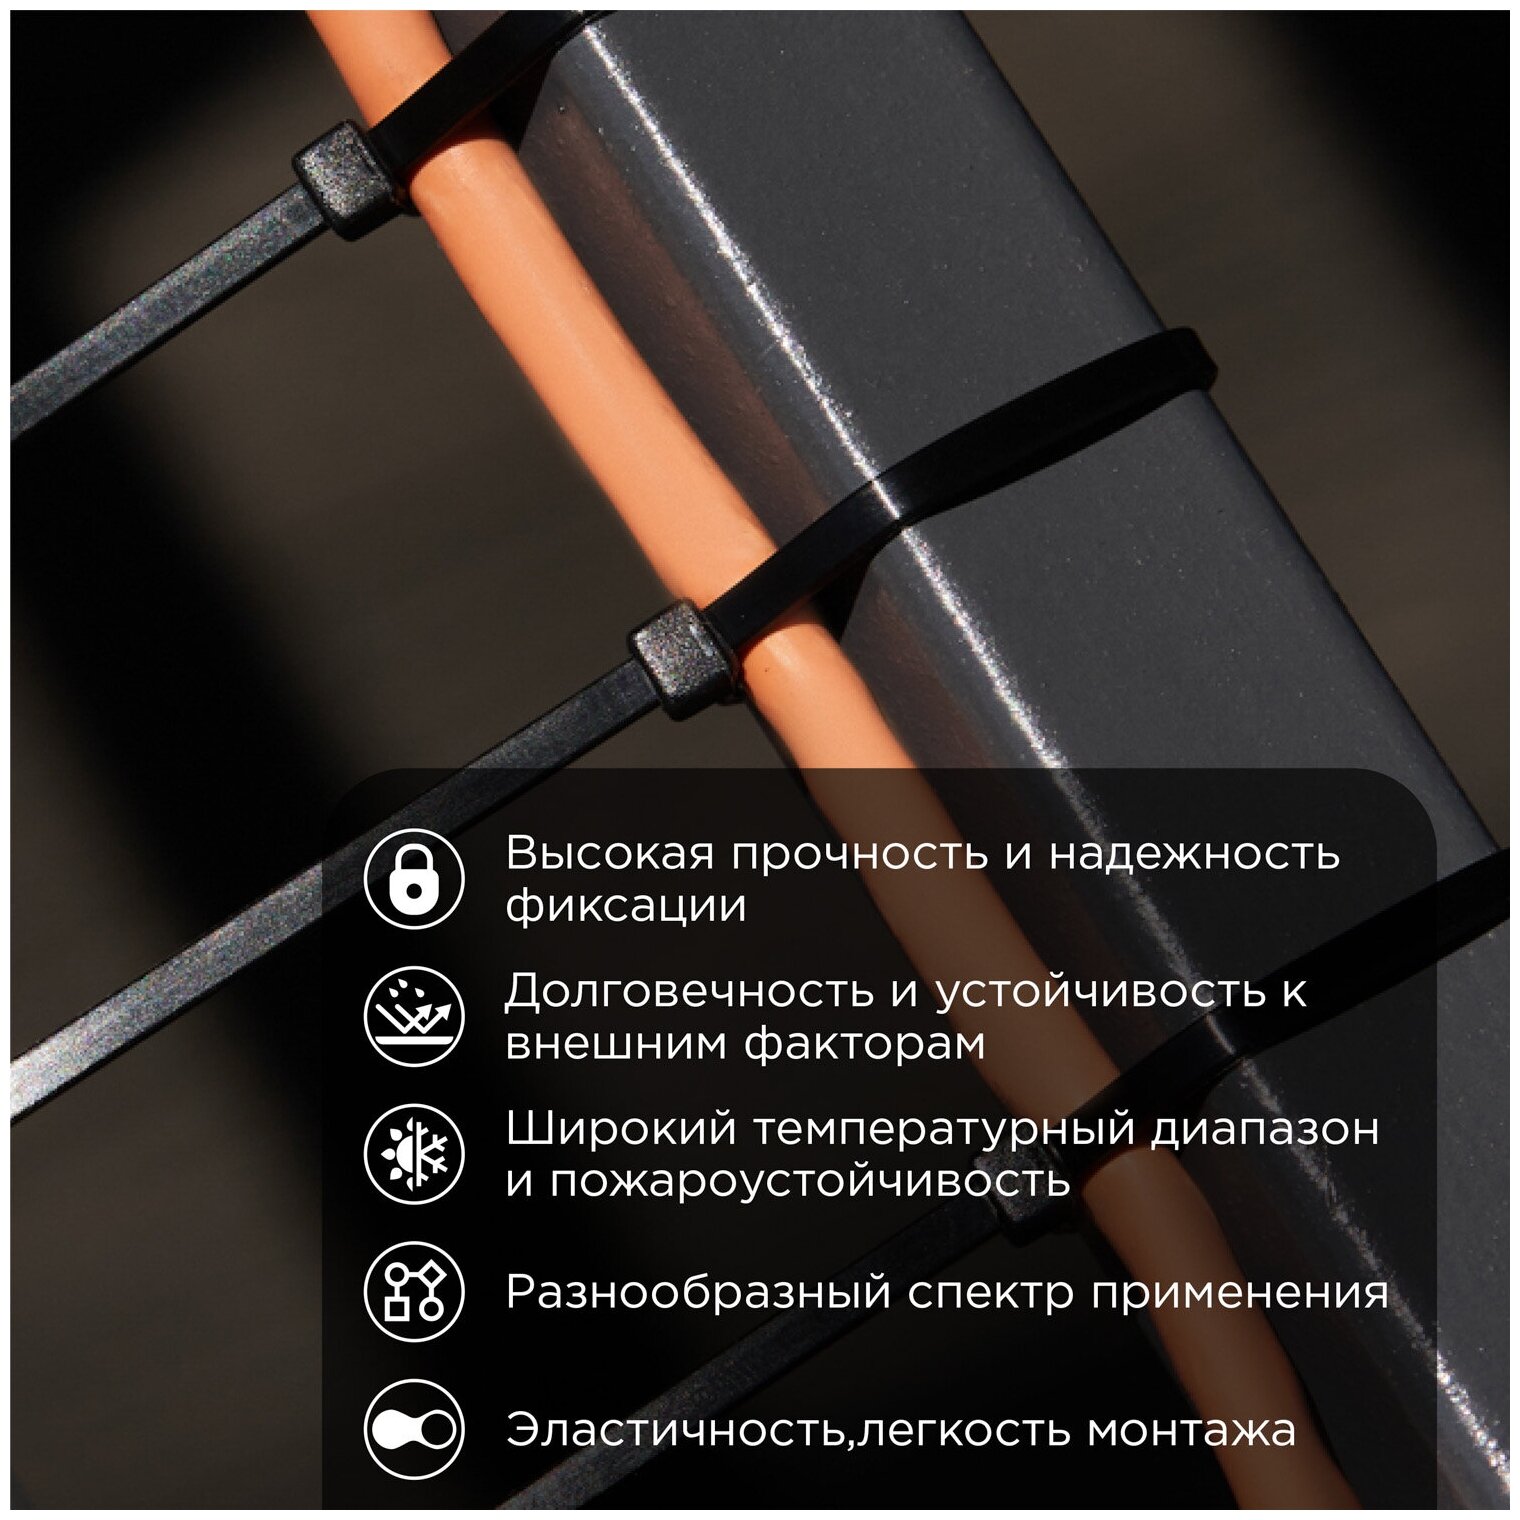 Хомут-стяжка кабельная нейлоновая REXANT 920 x90 черная упаковка 100 